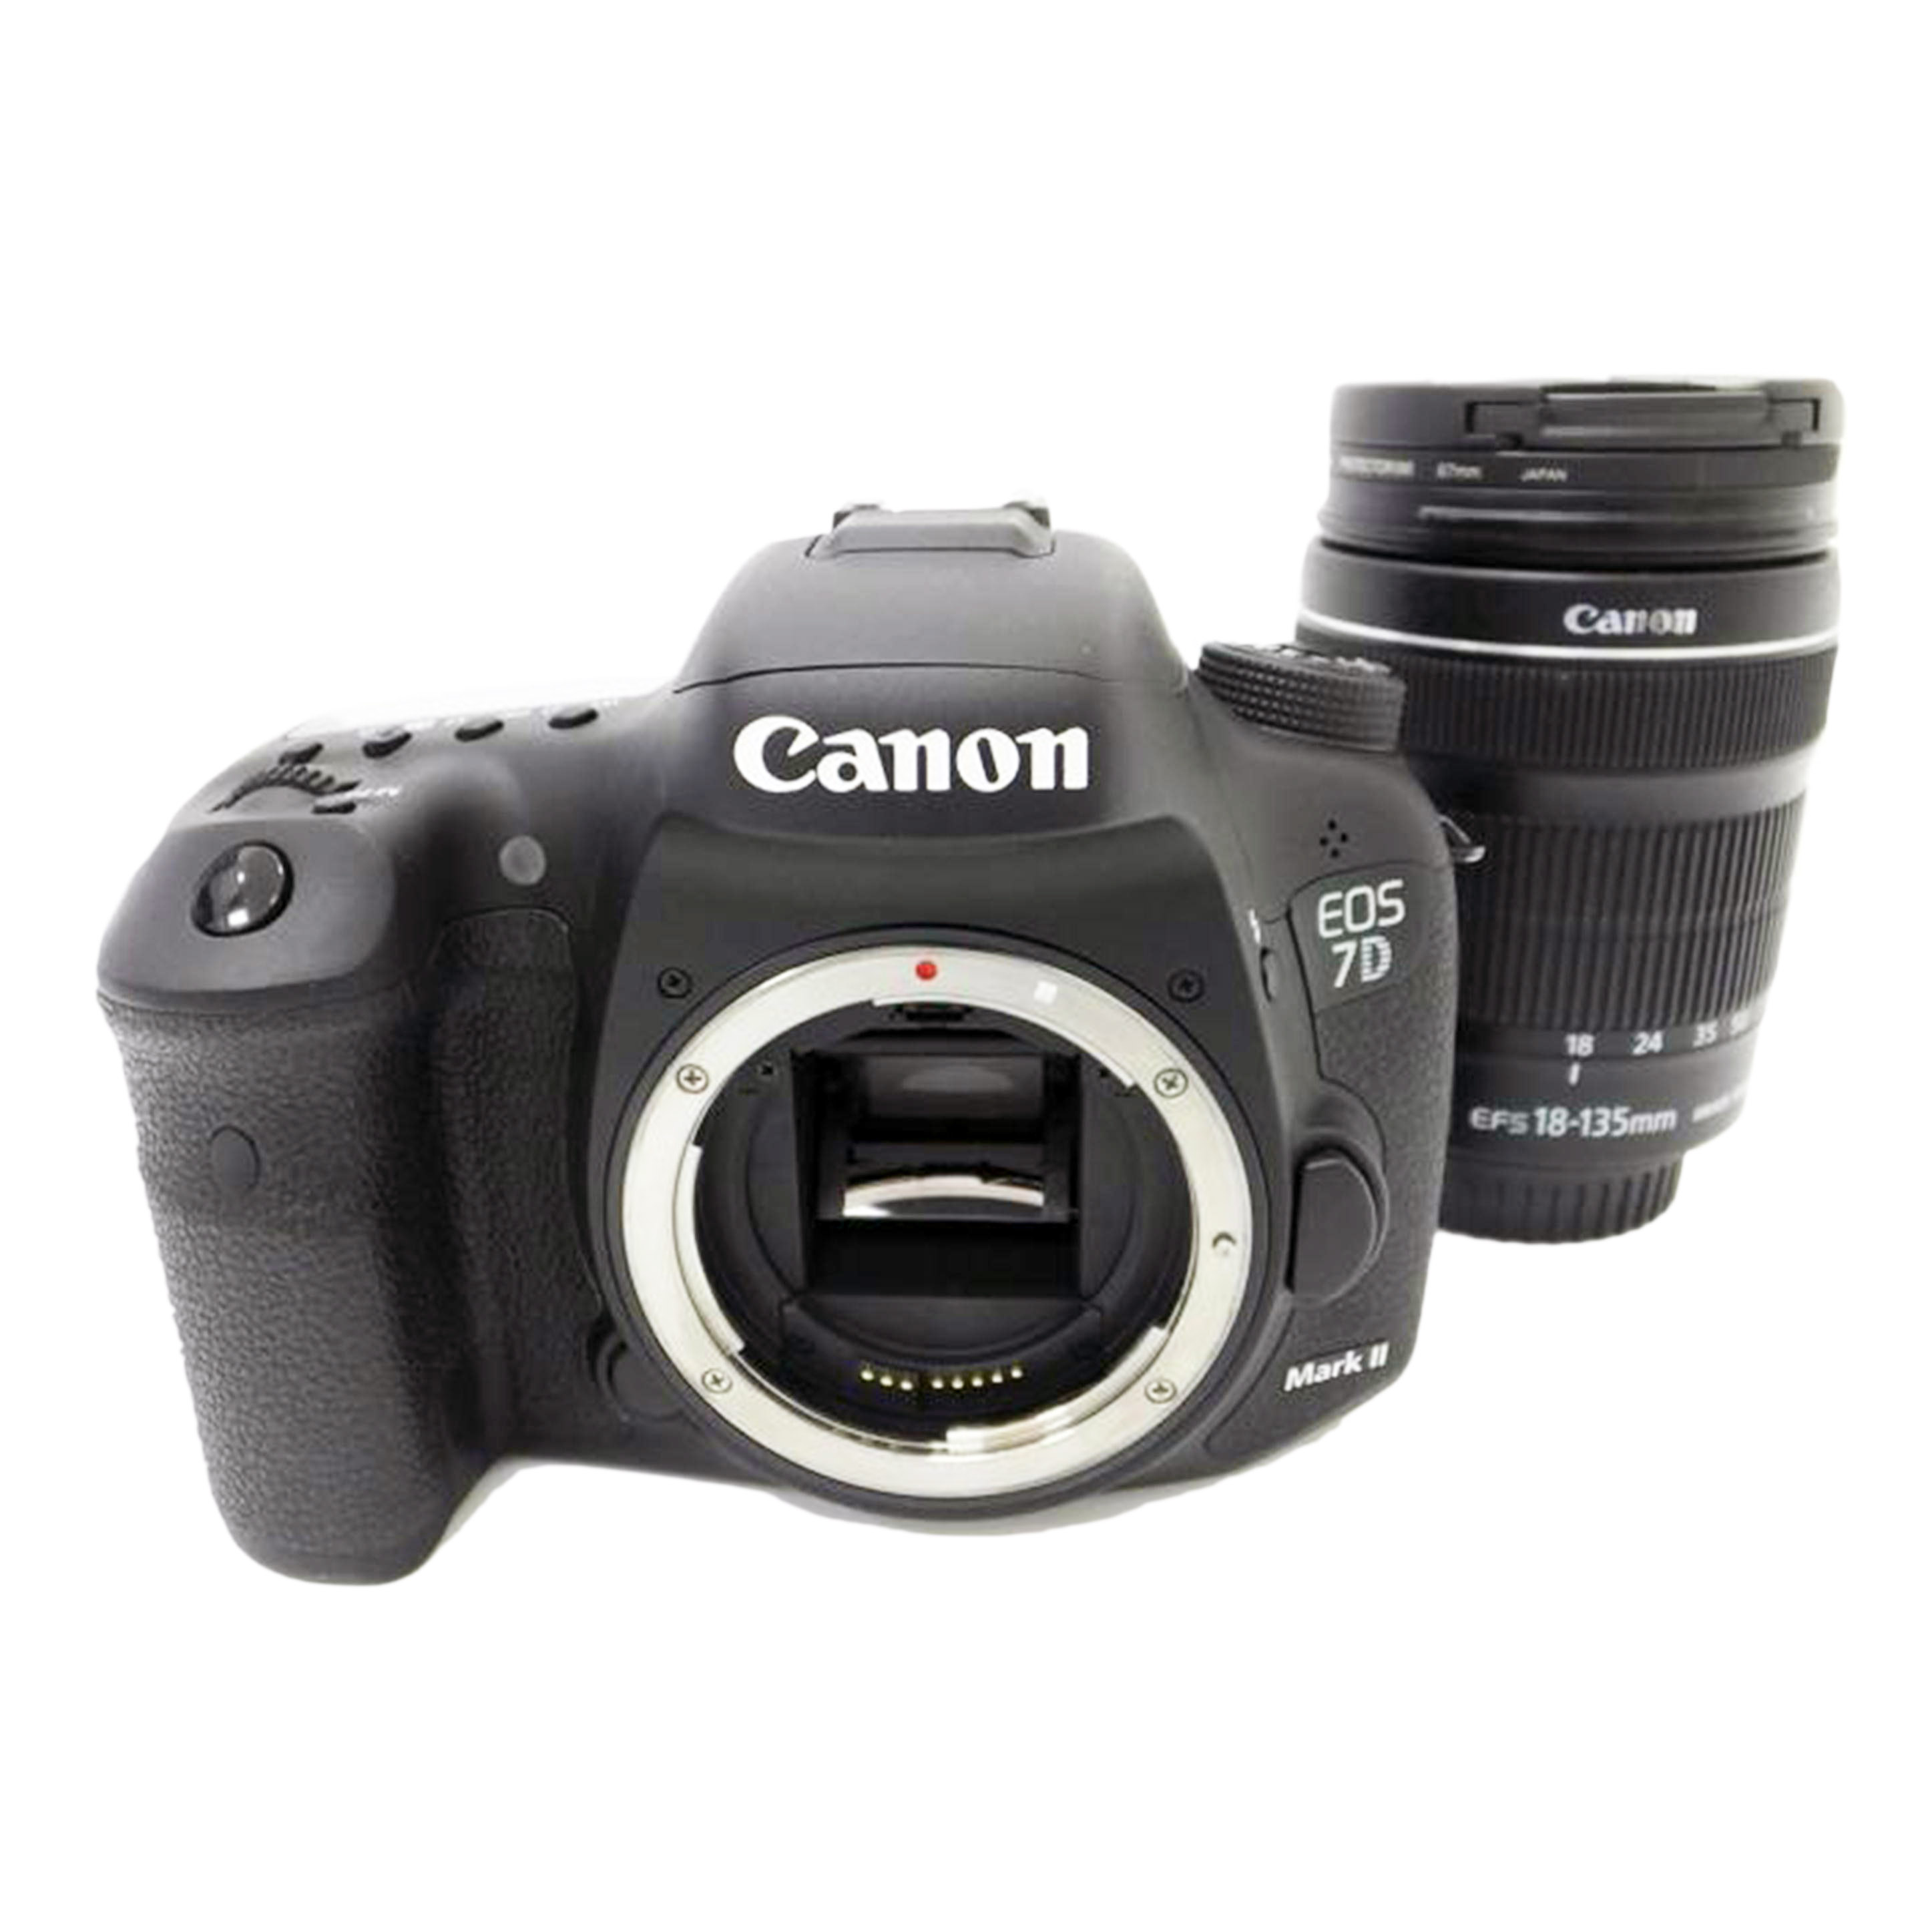 CANON キャノン/EOS 7D Mark II レンズキット/18-135mm/131052000297/デジタル一眼/ABランク/88